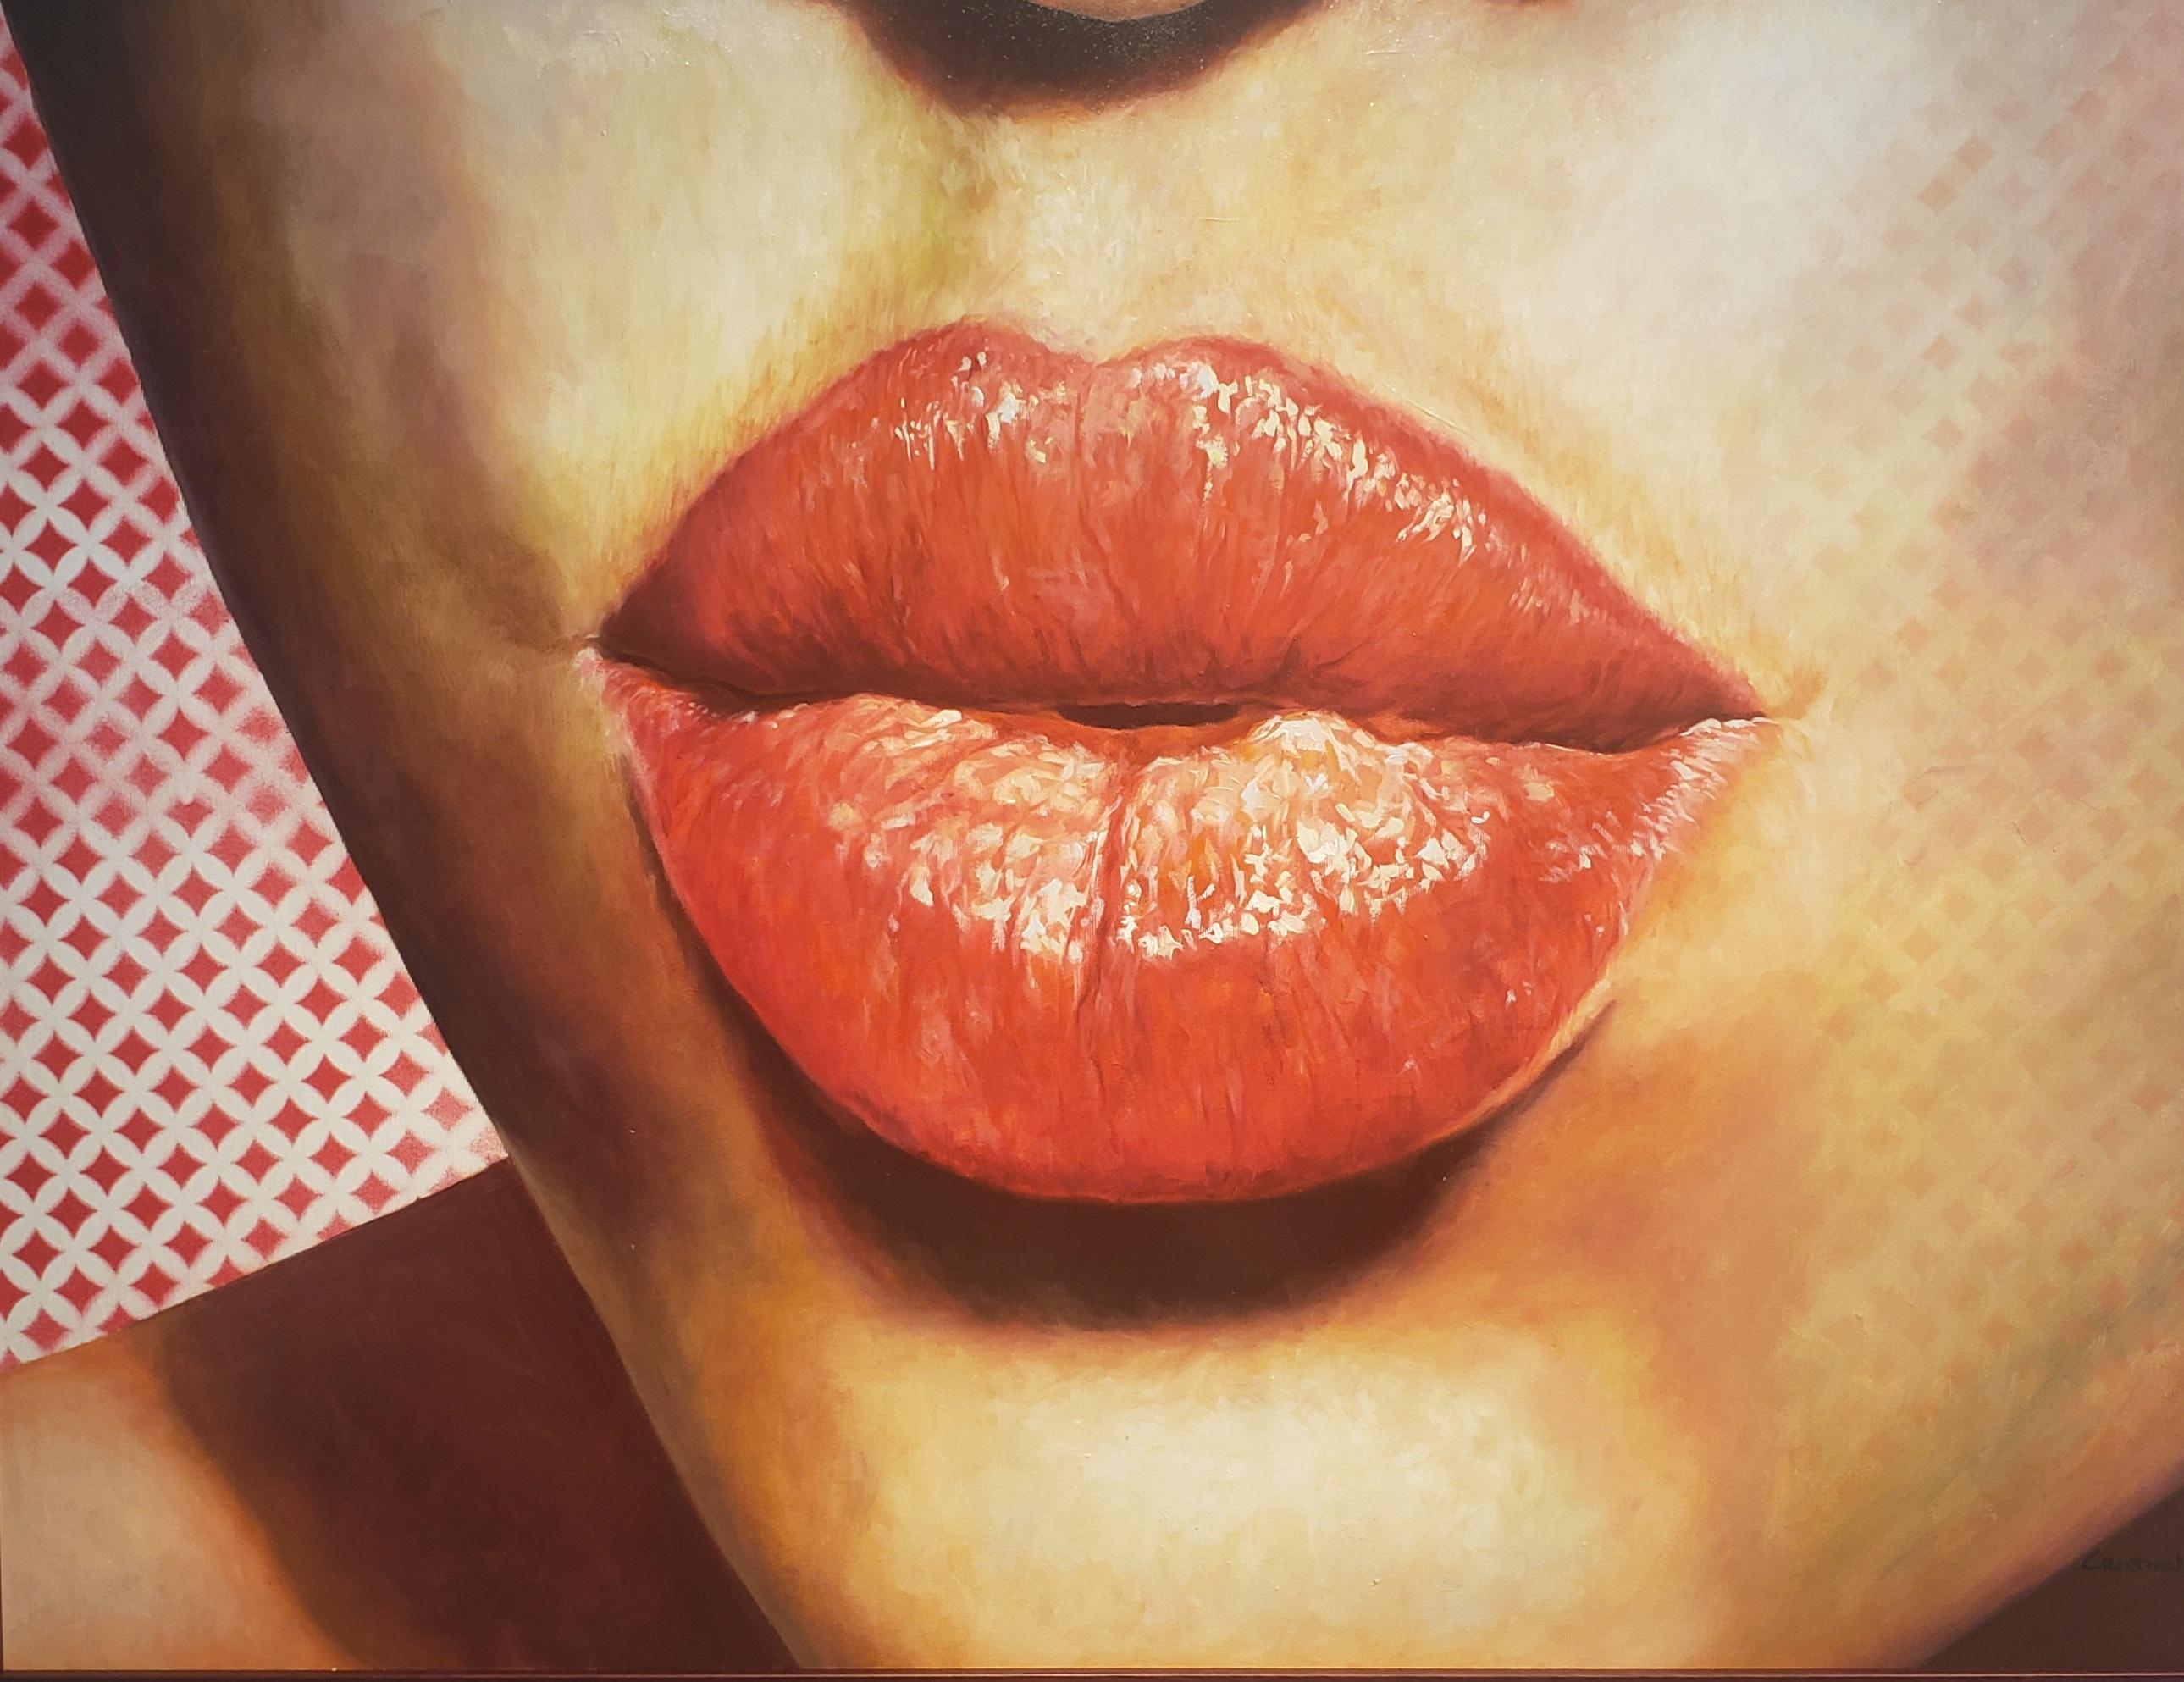 BESAME-KISS ME  est une nouvelle peinture du studio de l'artiste cubain Cristian Mesa Velazquez. Kiss Me est  une peinture à l'huile réalisée dans le style réaliste de la peinture contemporaine, c'est-à-dire à l'huile sur toile.  Cristian Mesa